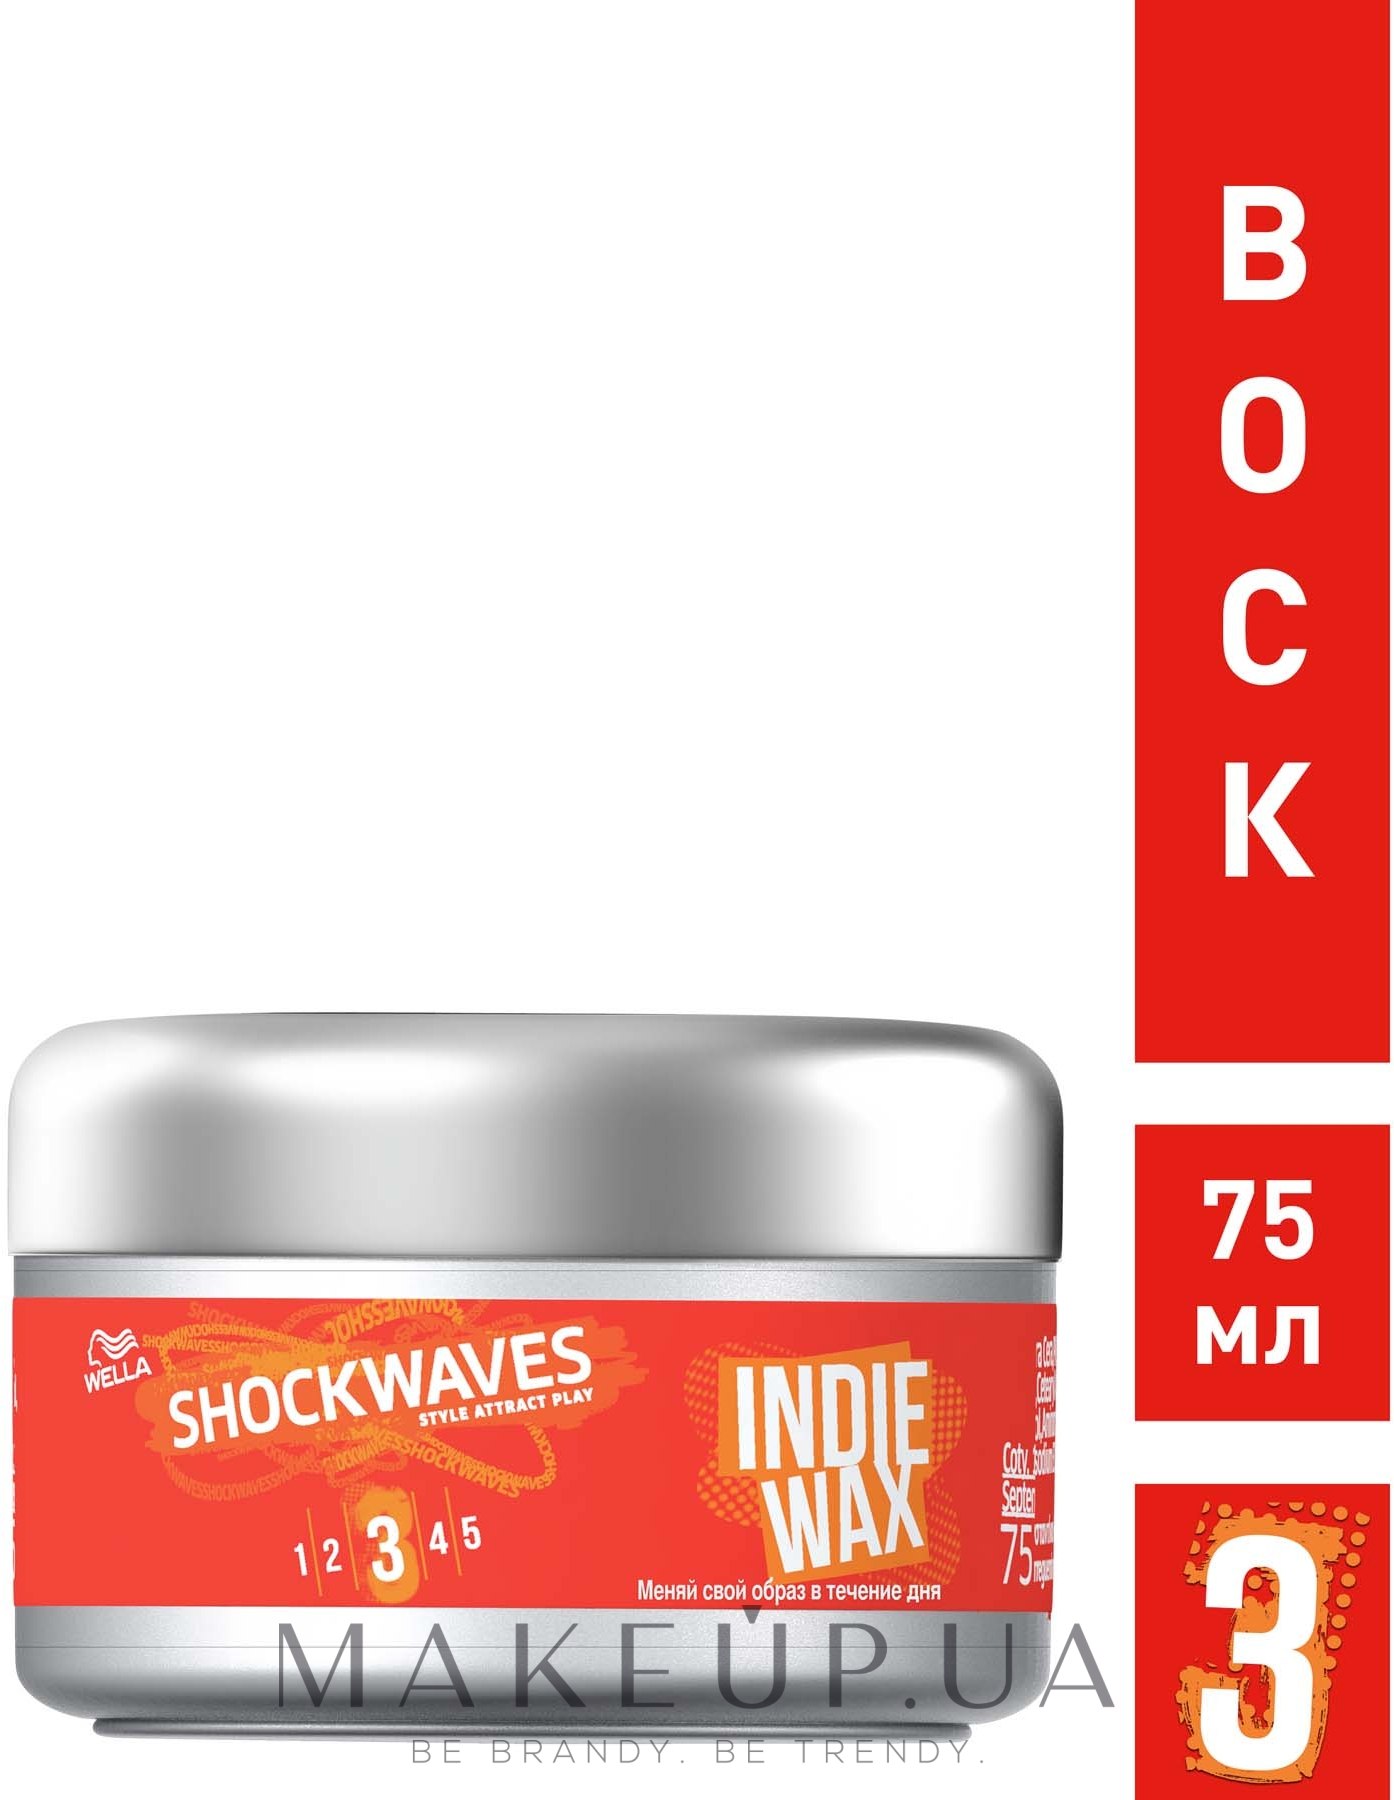 Shockwaves wax